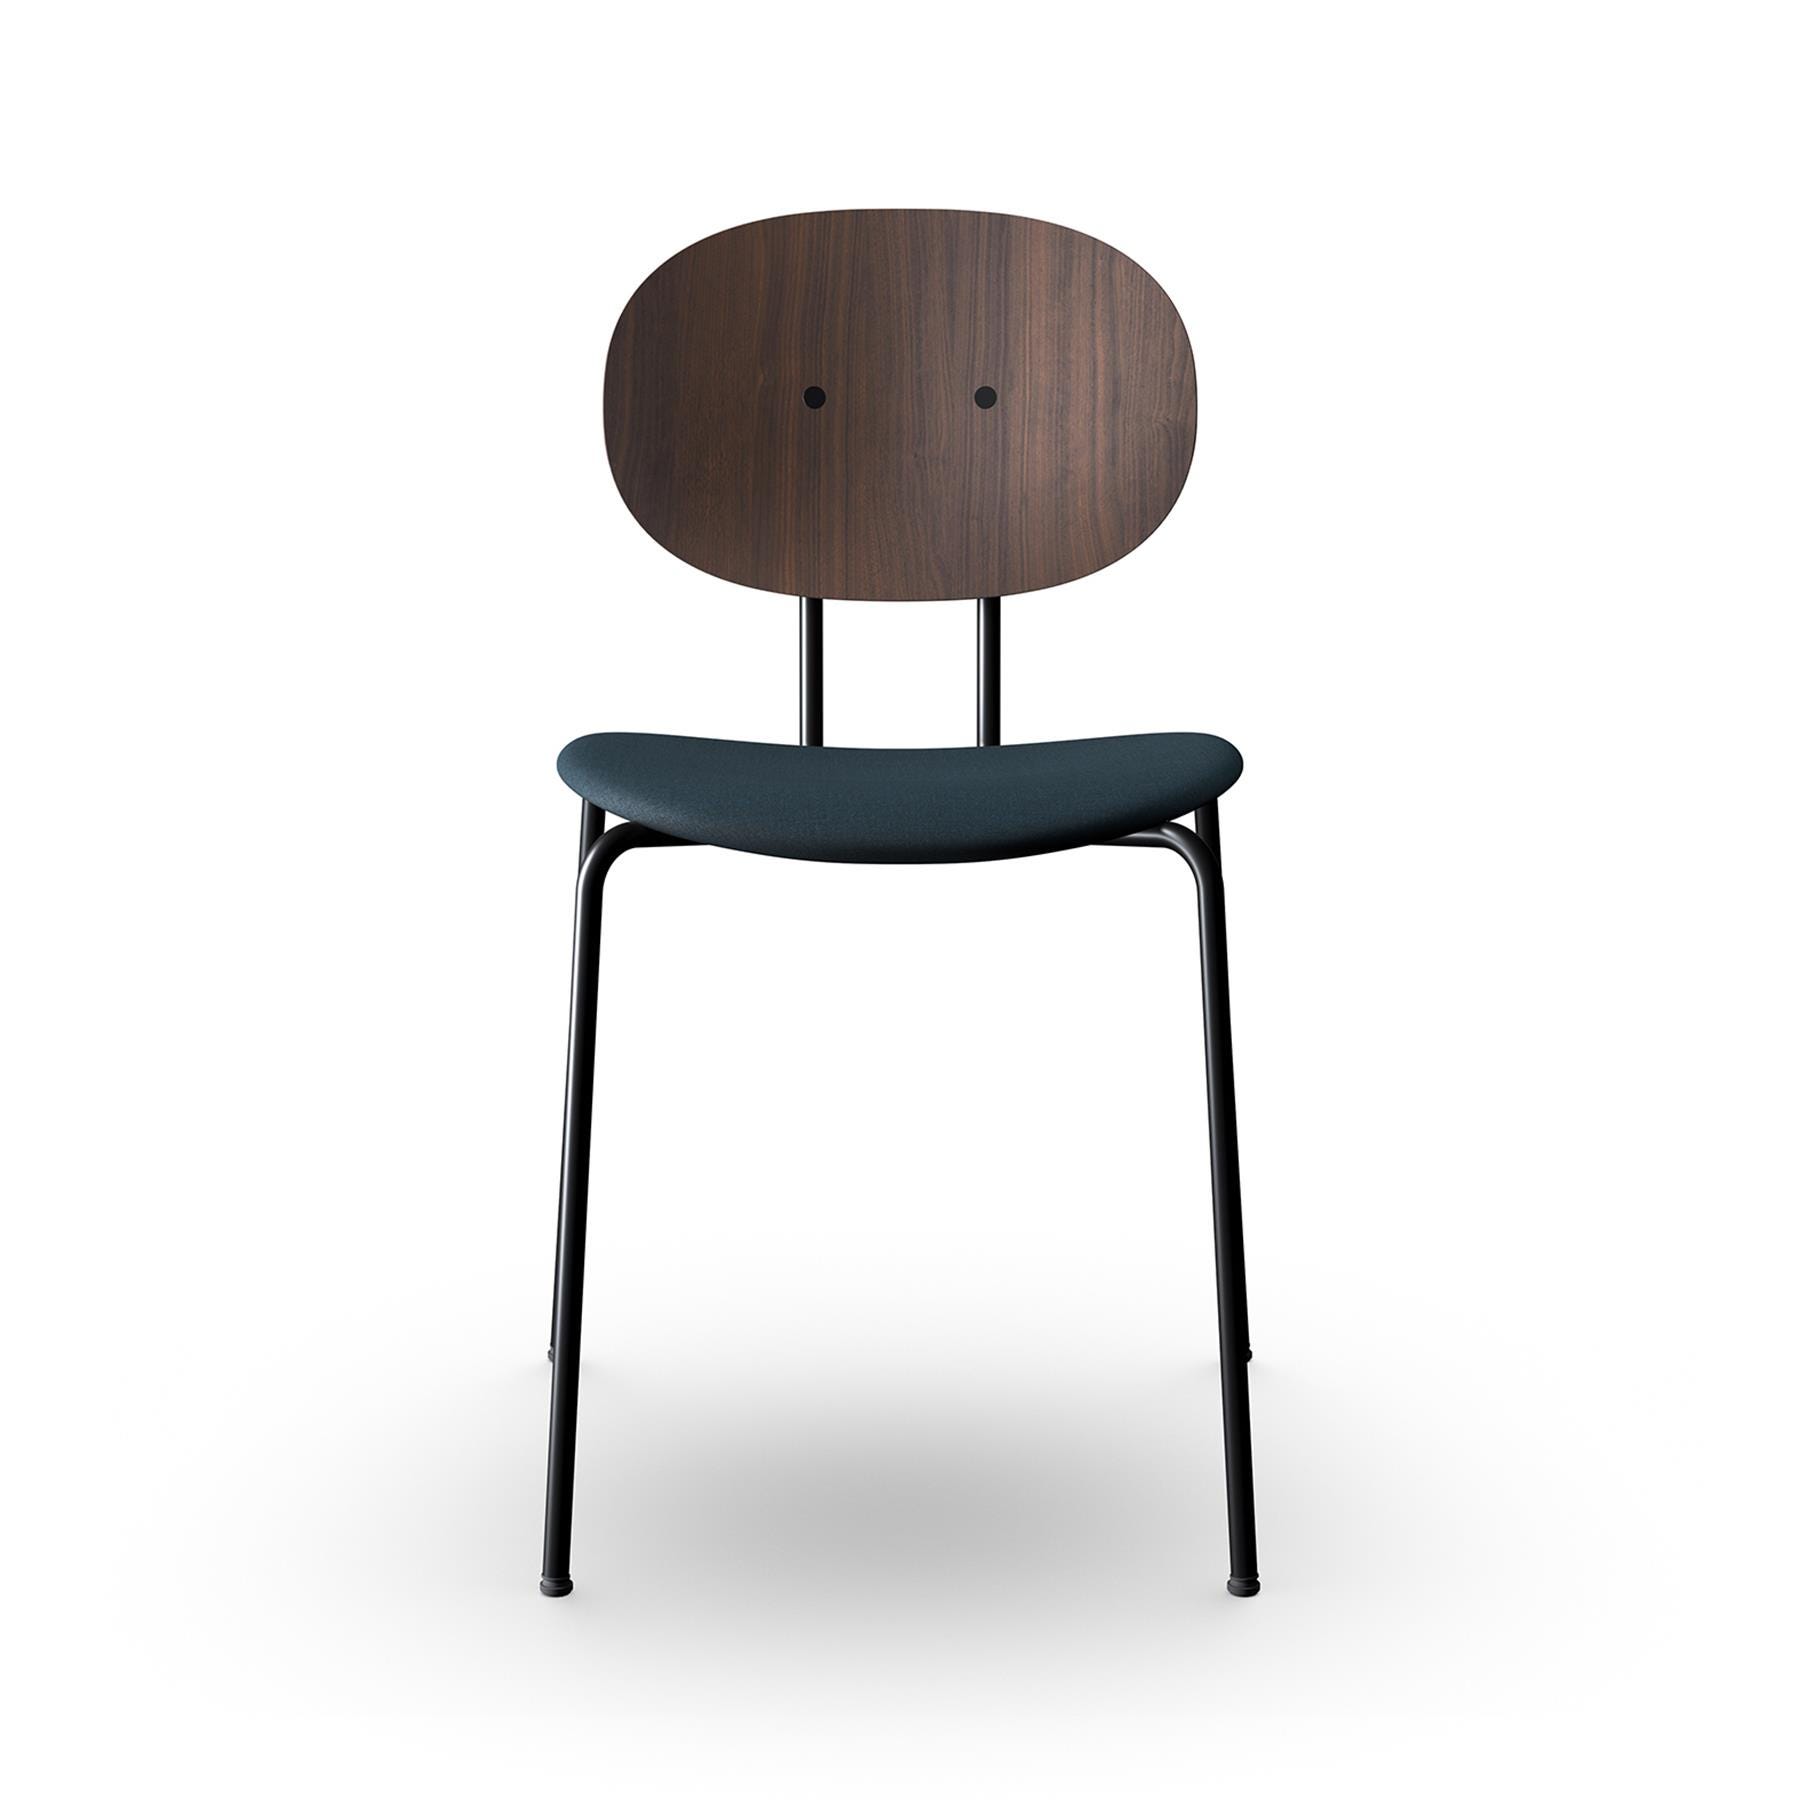 Sibast Piet Hein Dining Chair Black Steel Walnut Remix 873 Designer Furniture From Holloways Of Ludlow